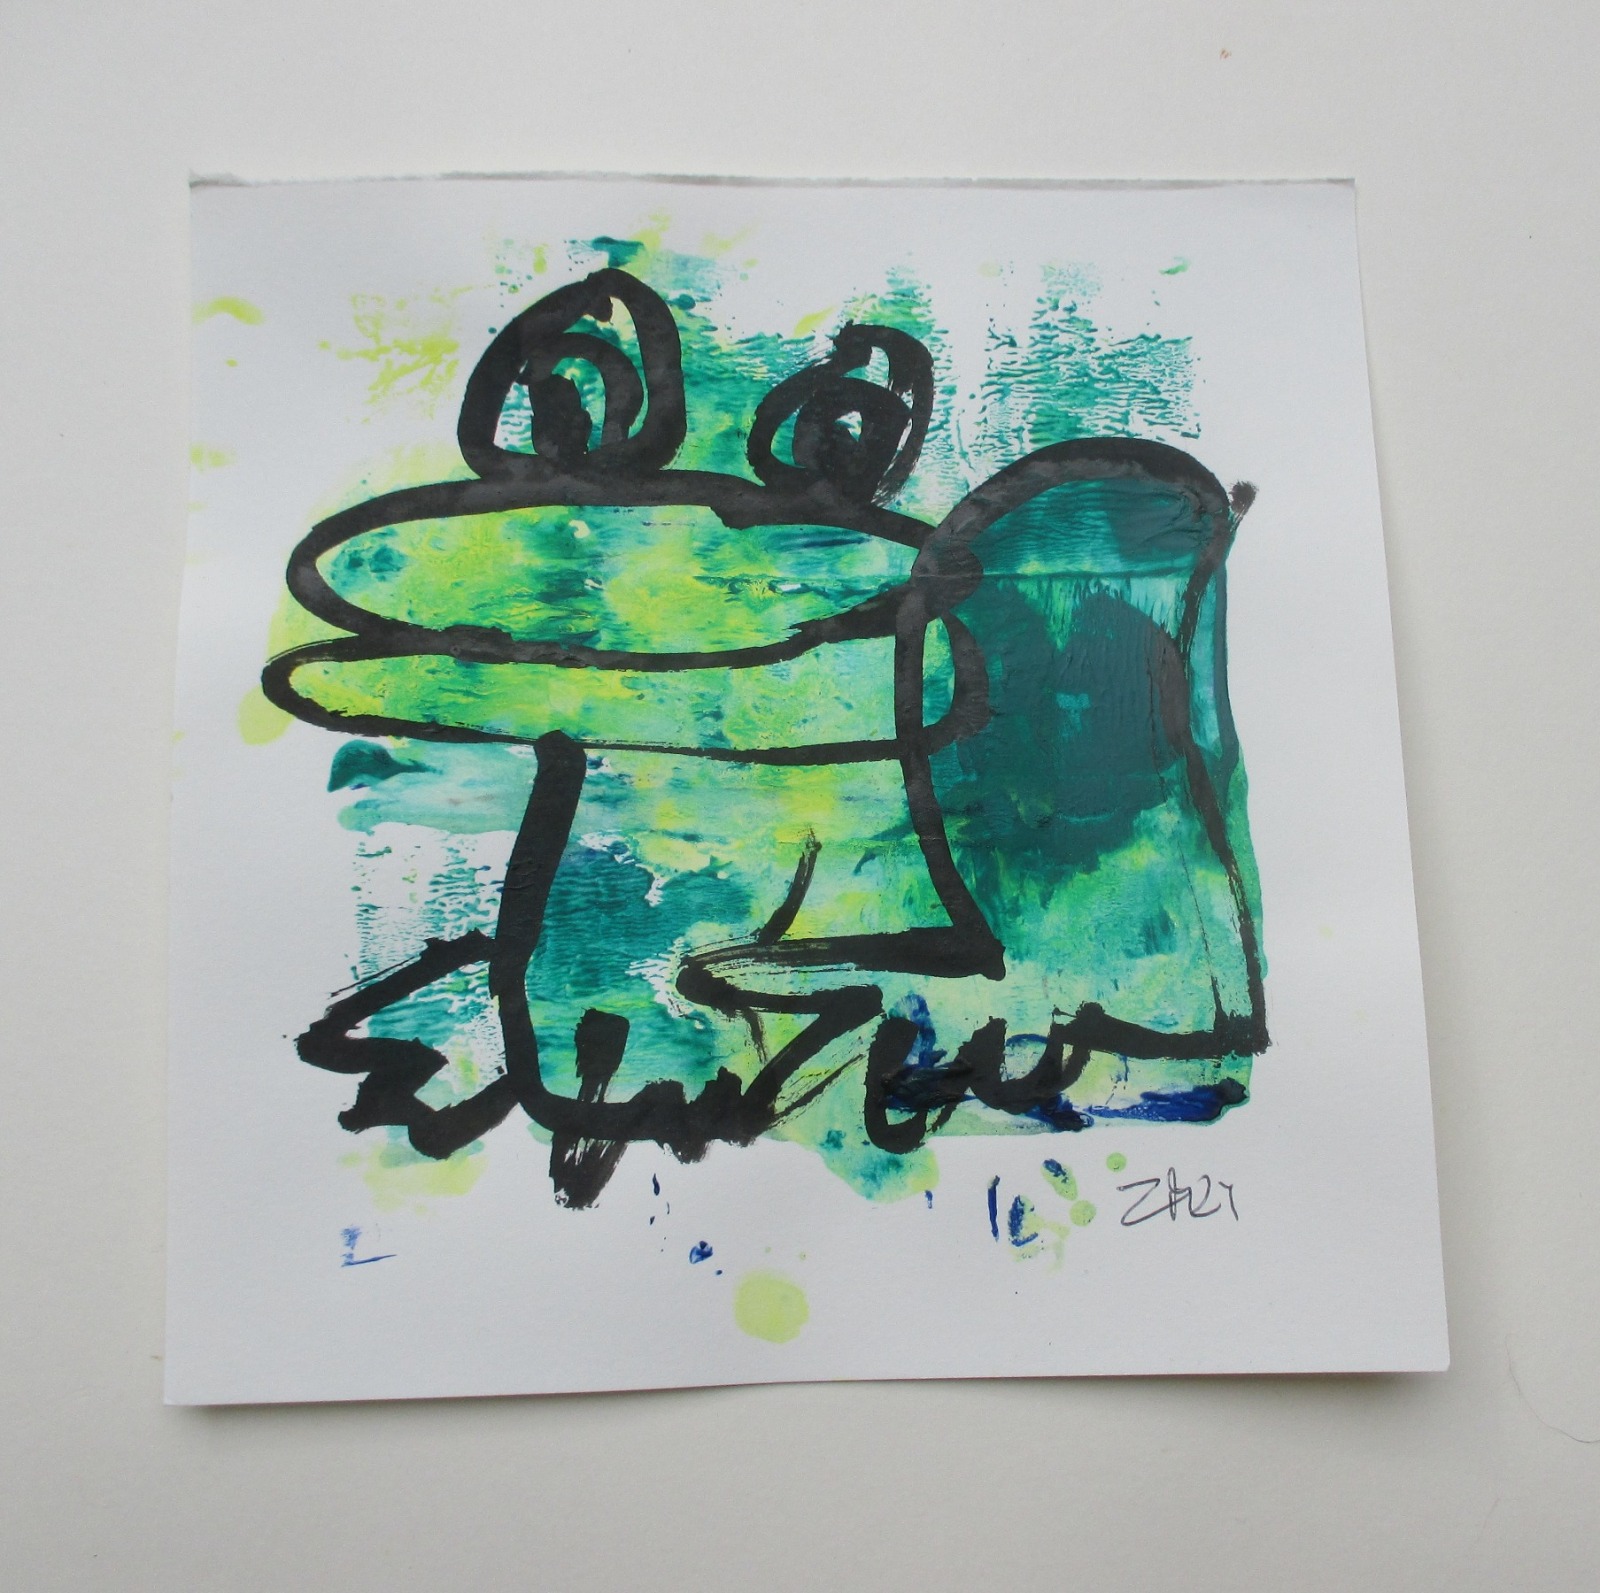 grüner Frosch Original Zeichnung auf Künstlerpapier 20x20cm expressiv - mit Acryl gezeichnet 2